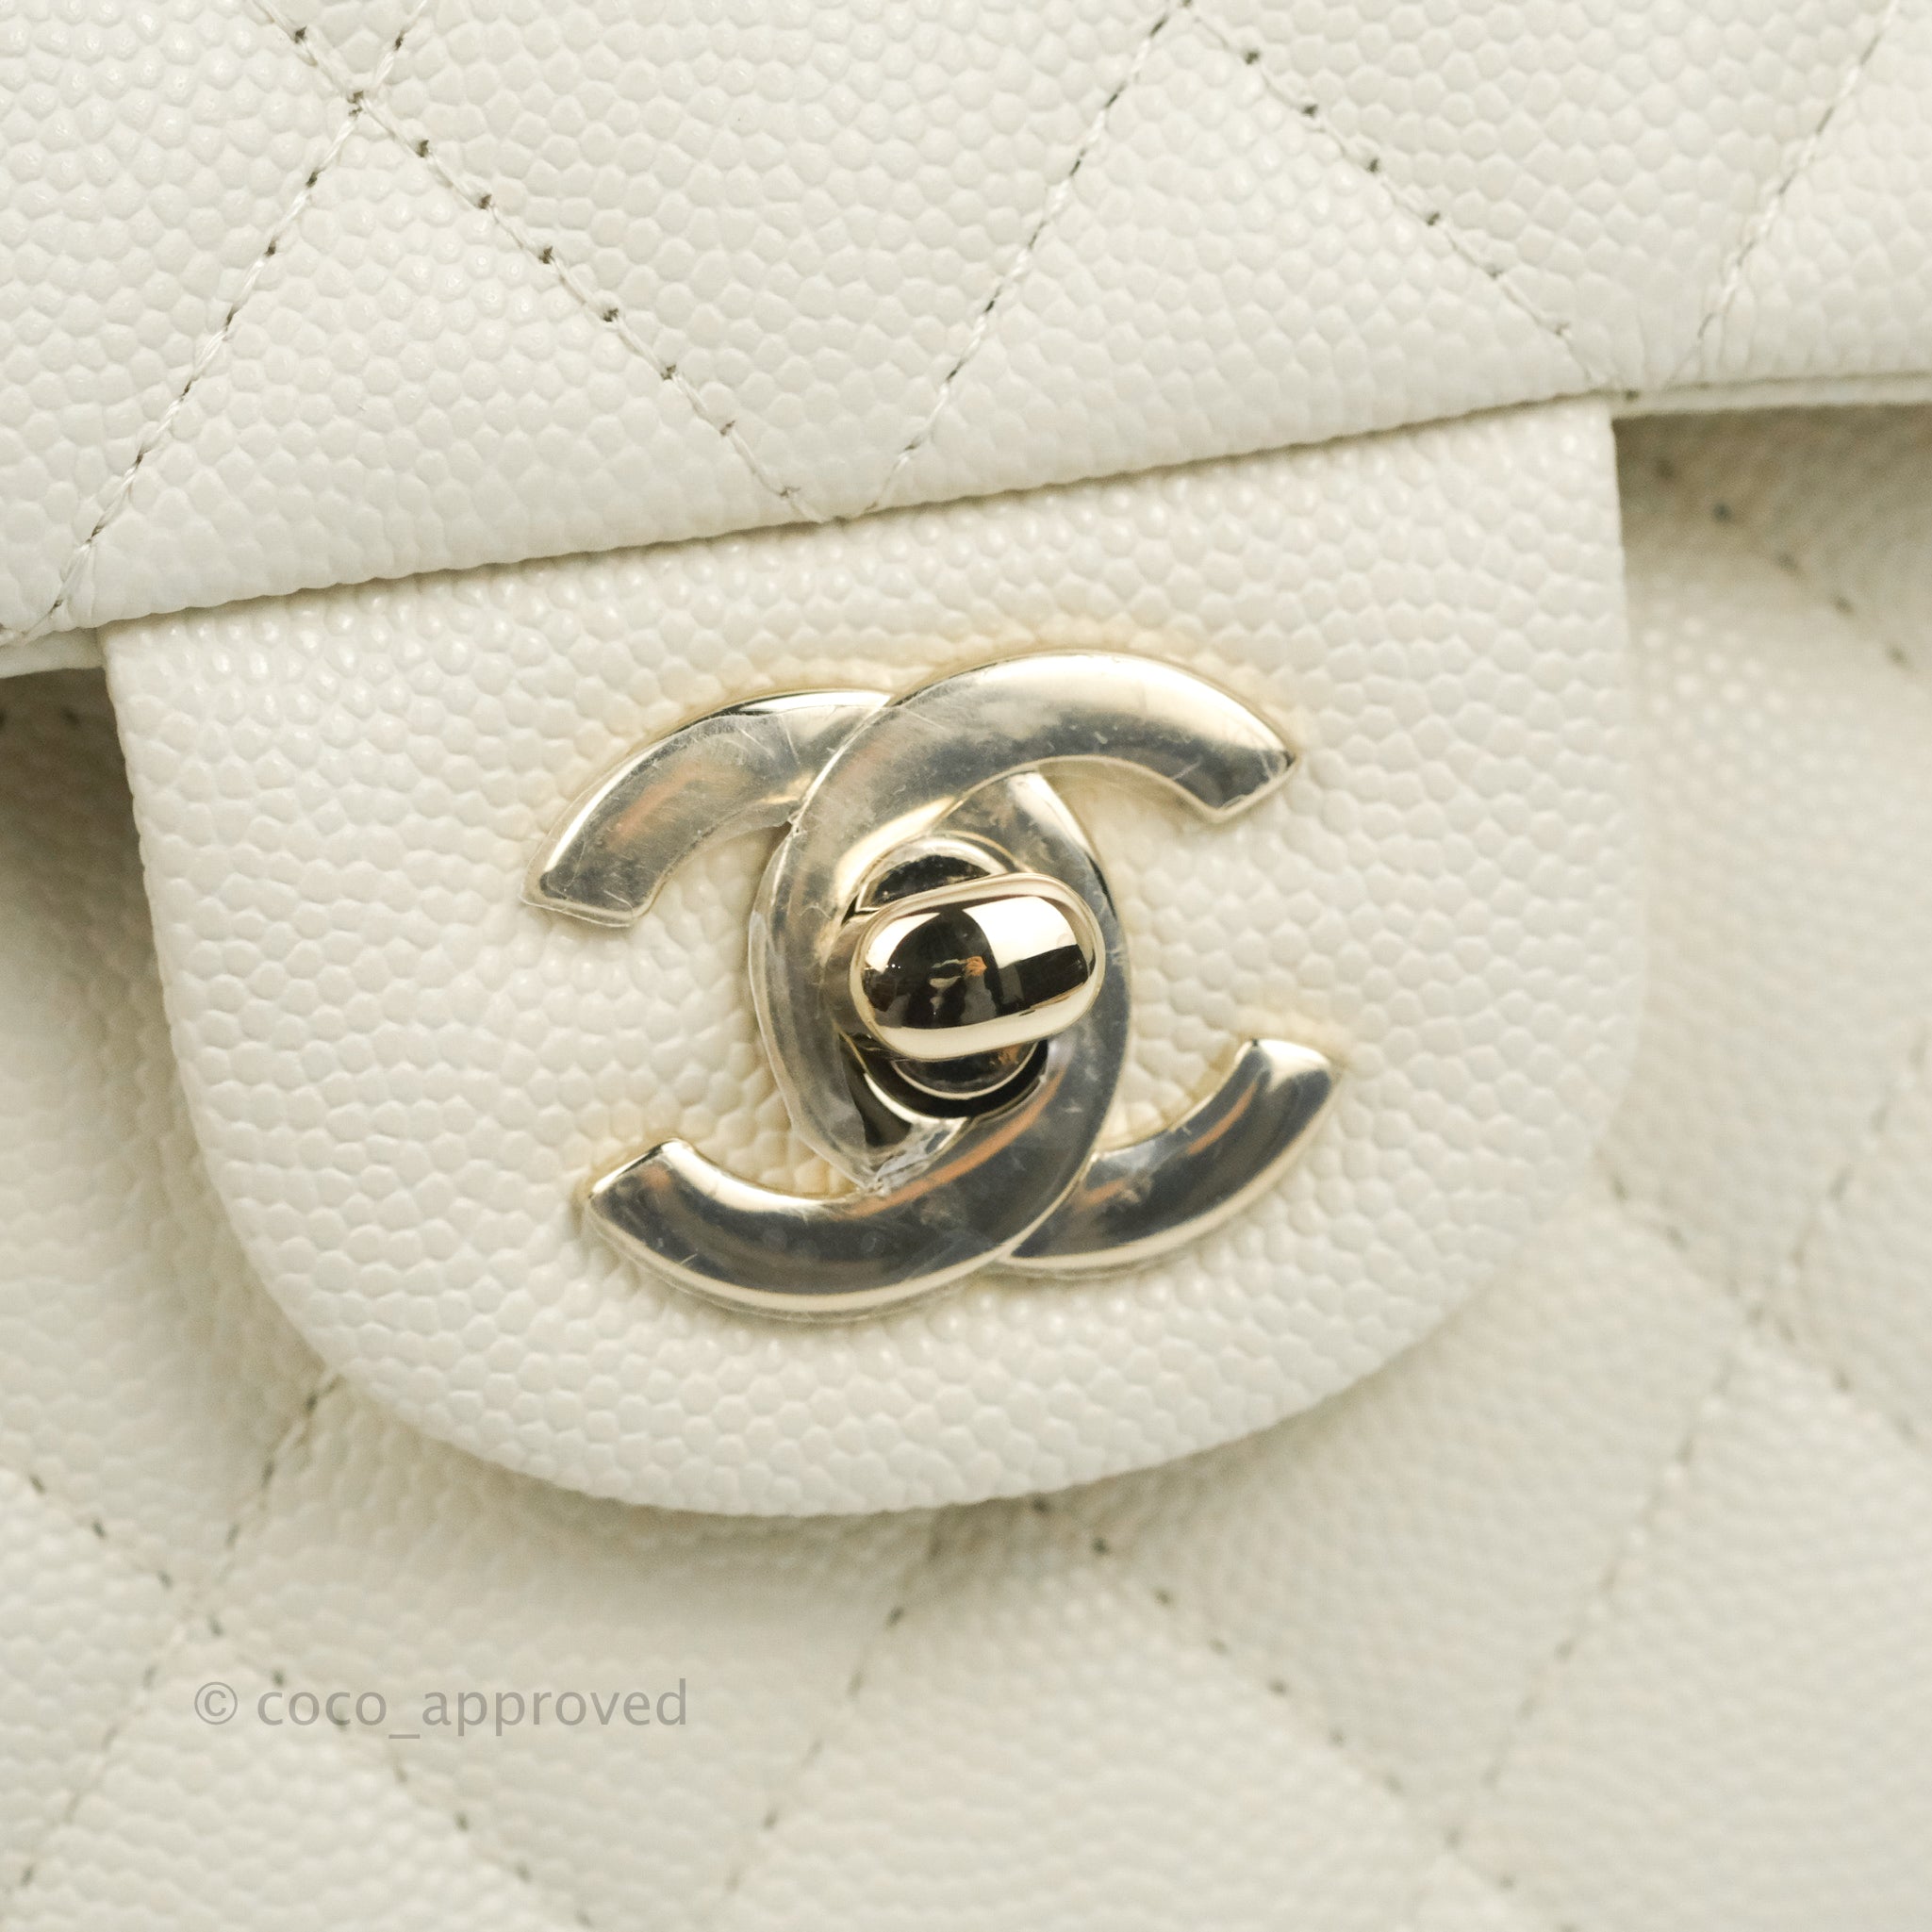 Chanel Classic Flap Bag Mini White Caviar Silver Hardware